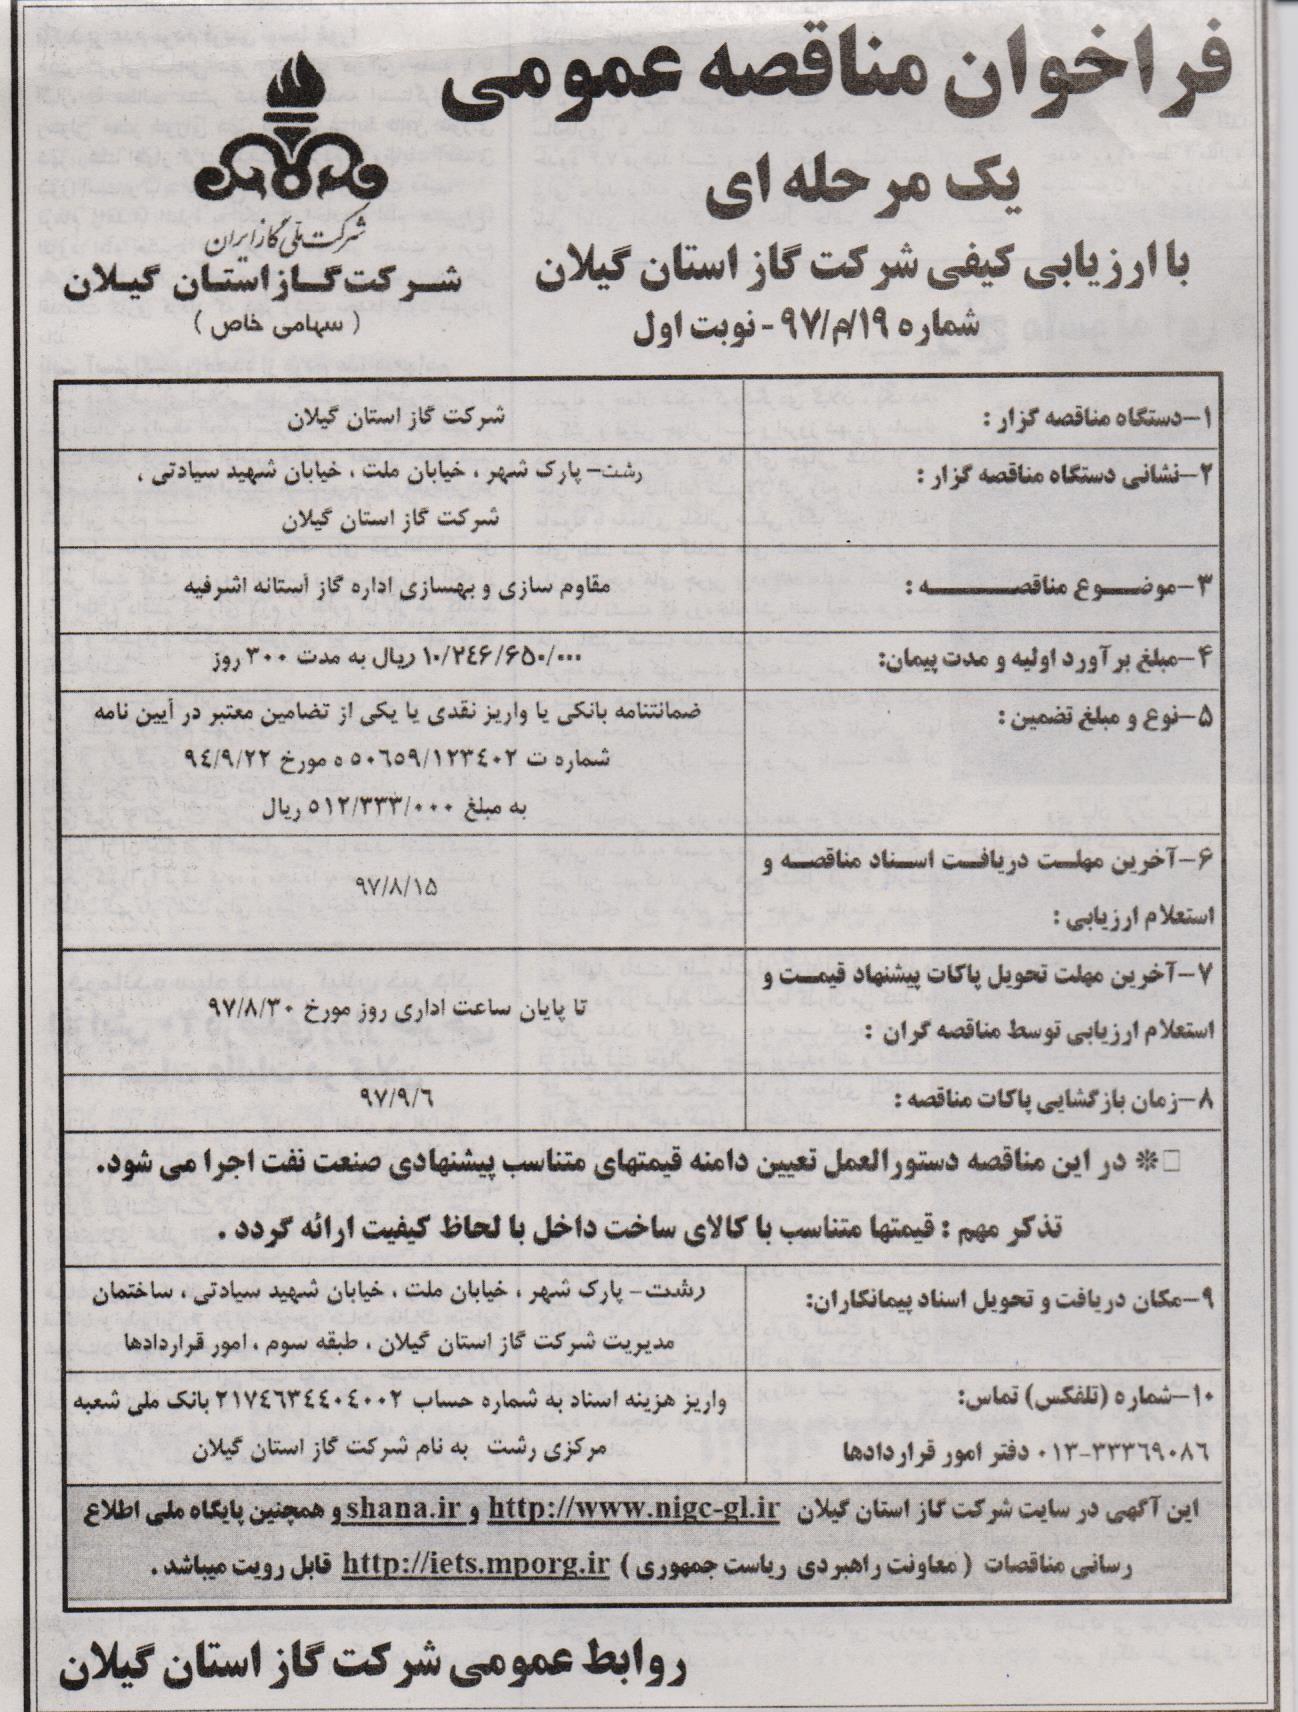 آگهی مناقصه مقاوم سازی و بهسازی اداره گاز آستانه اشرفیه - 2 آبان